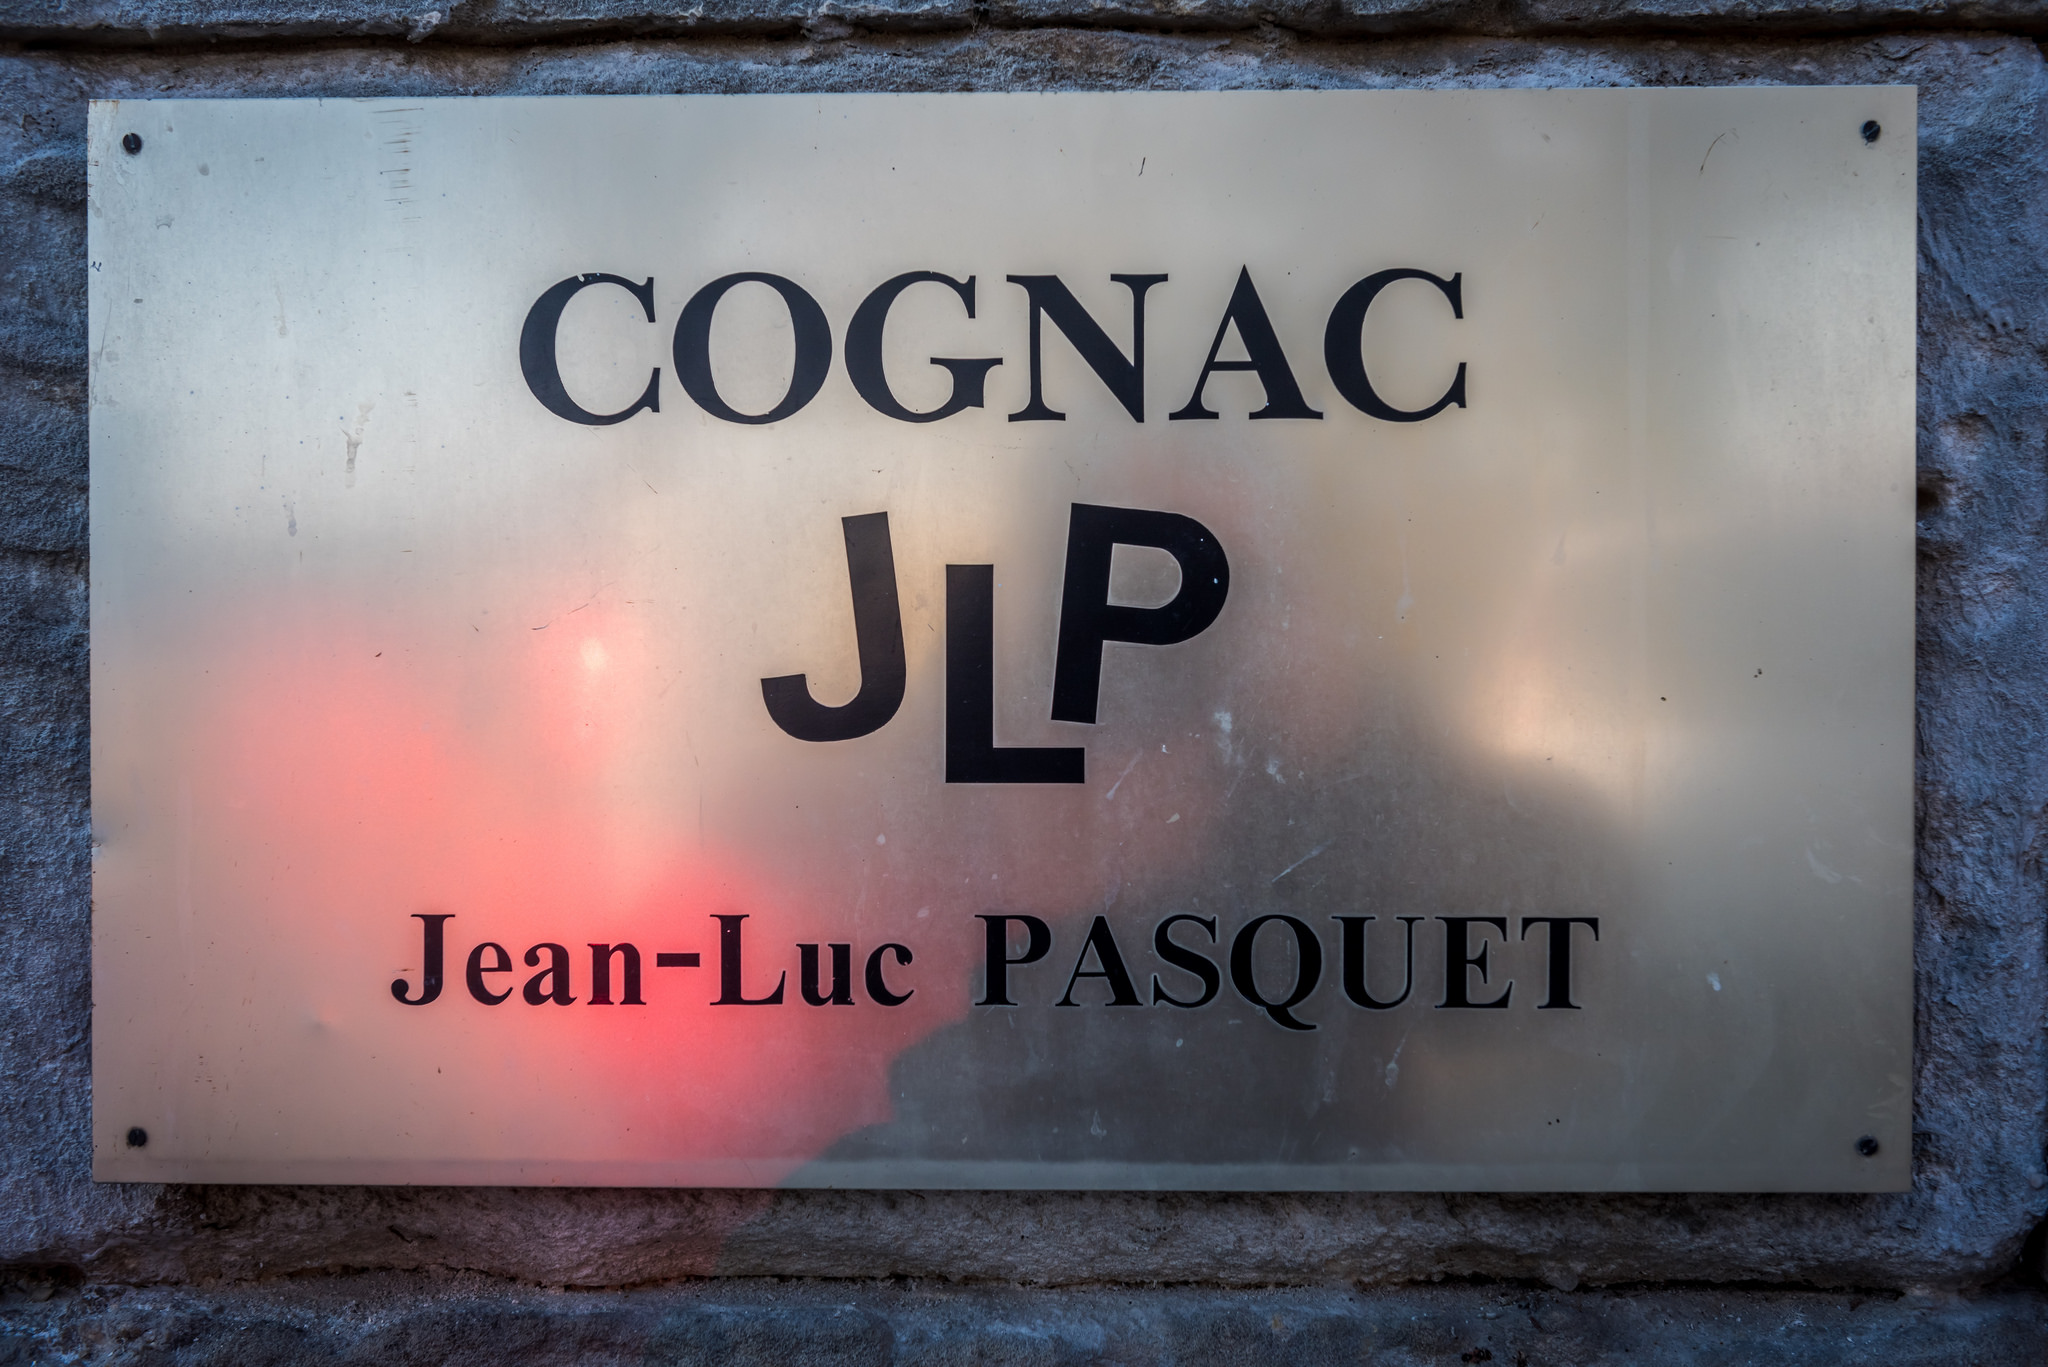 Jean-Luc Pasquet Cognac: Where Family Matters